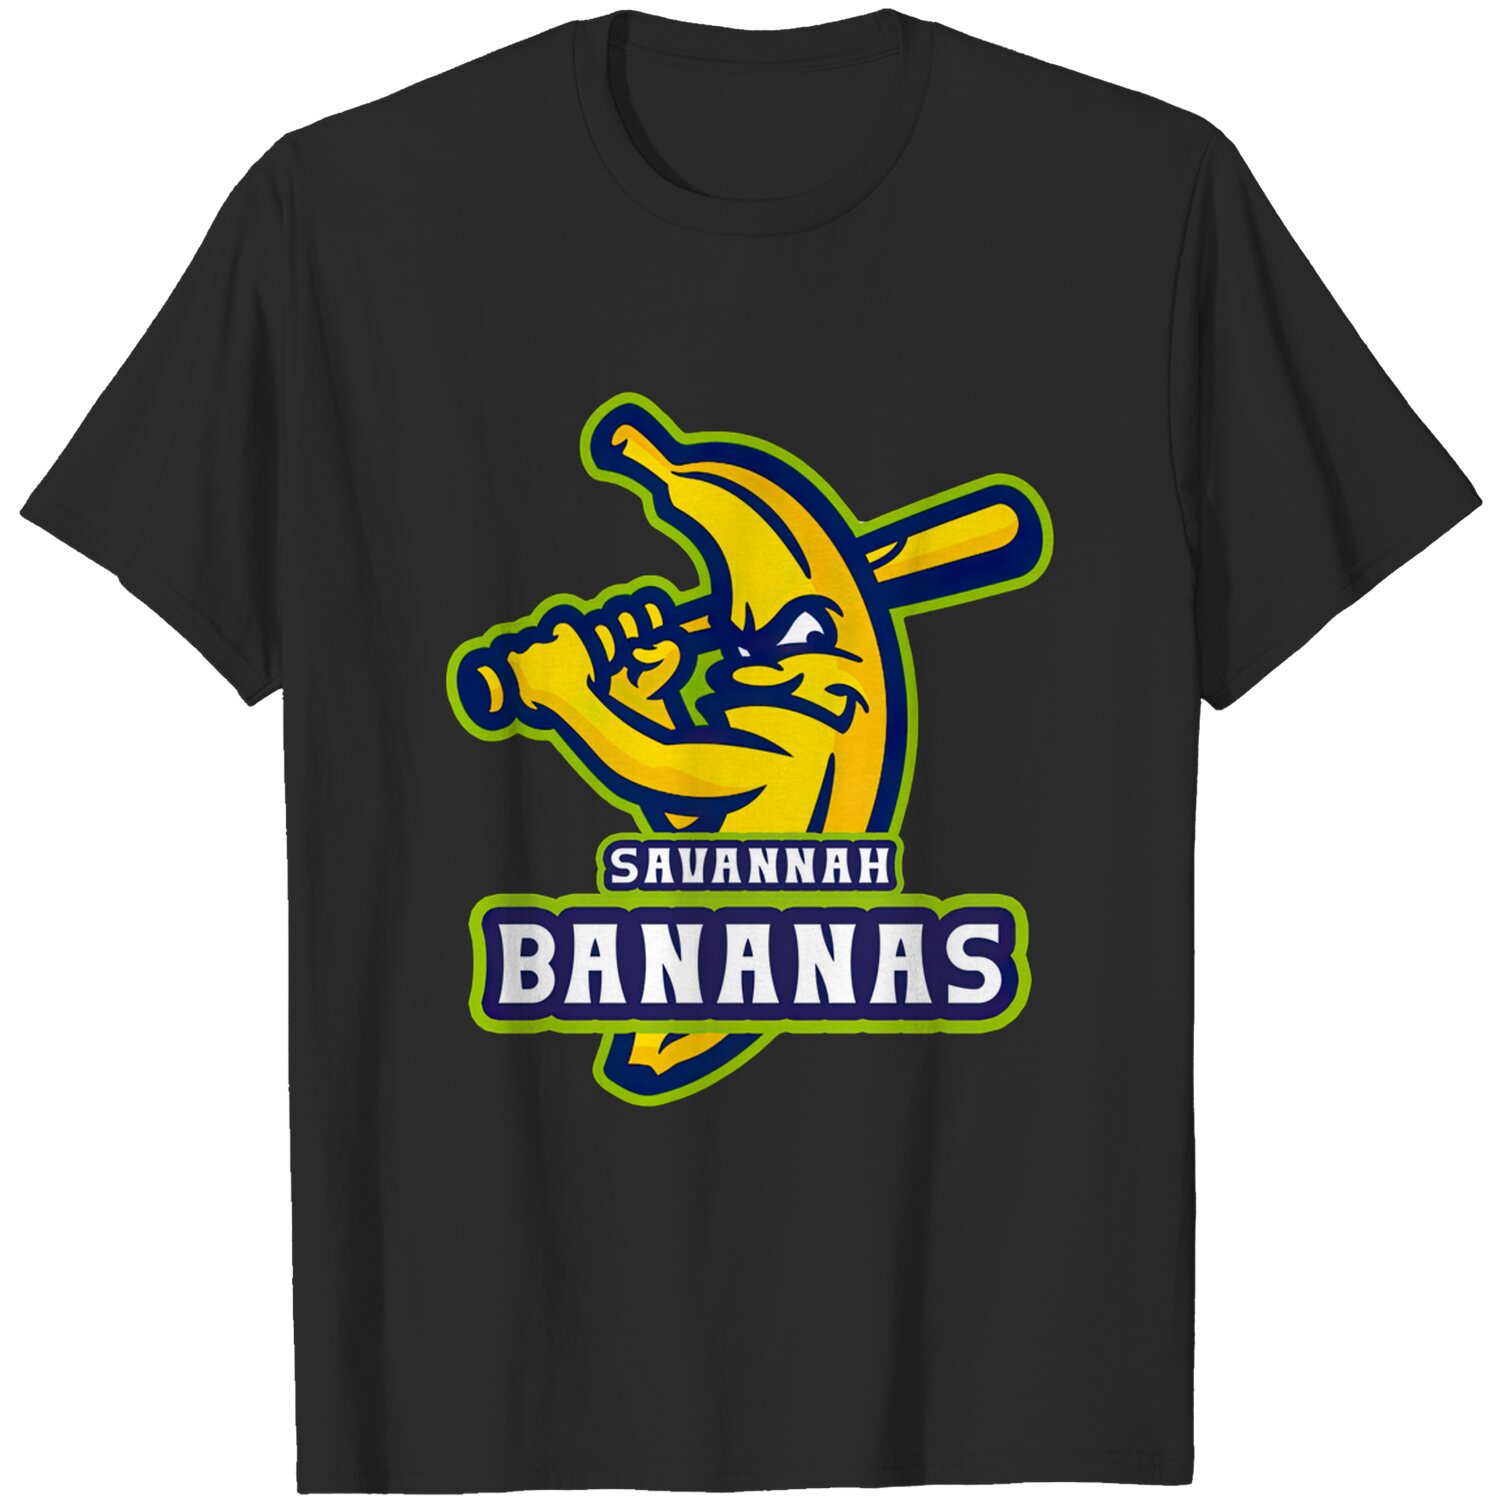 Bananas team - SAVANNAH BANANAS T-Shirt - Printiment